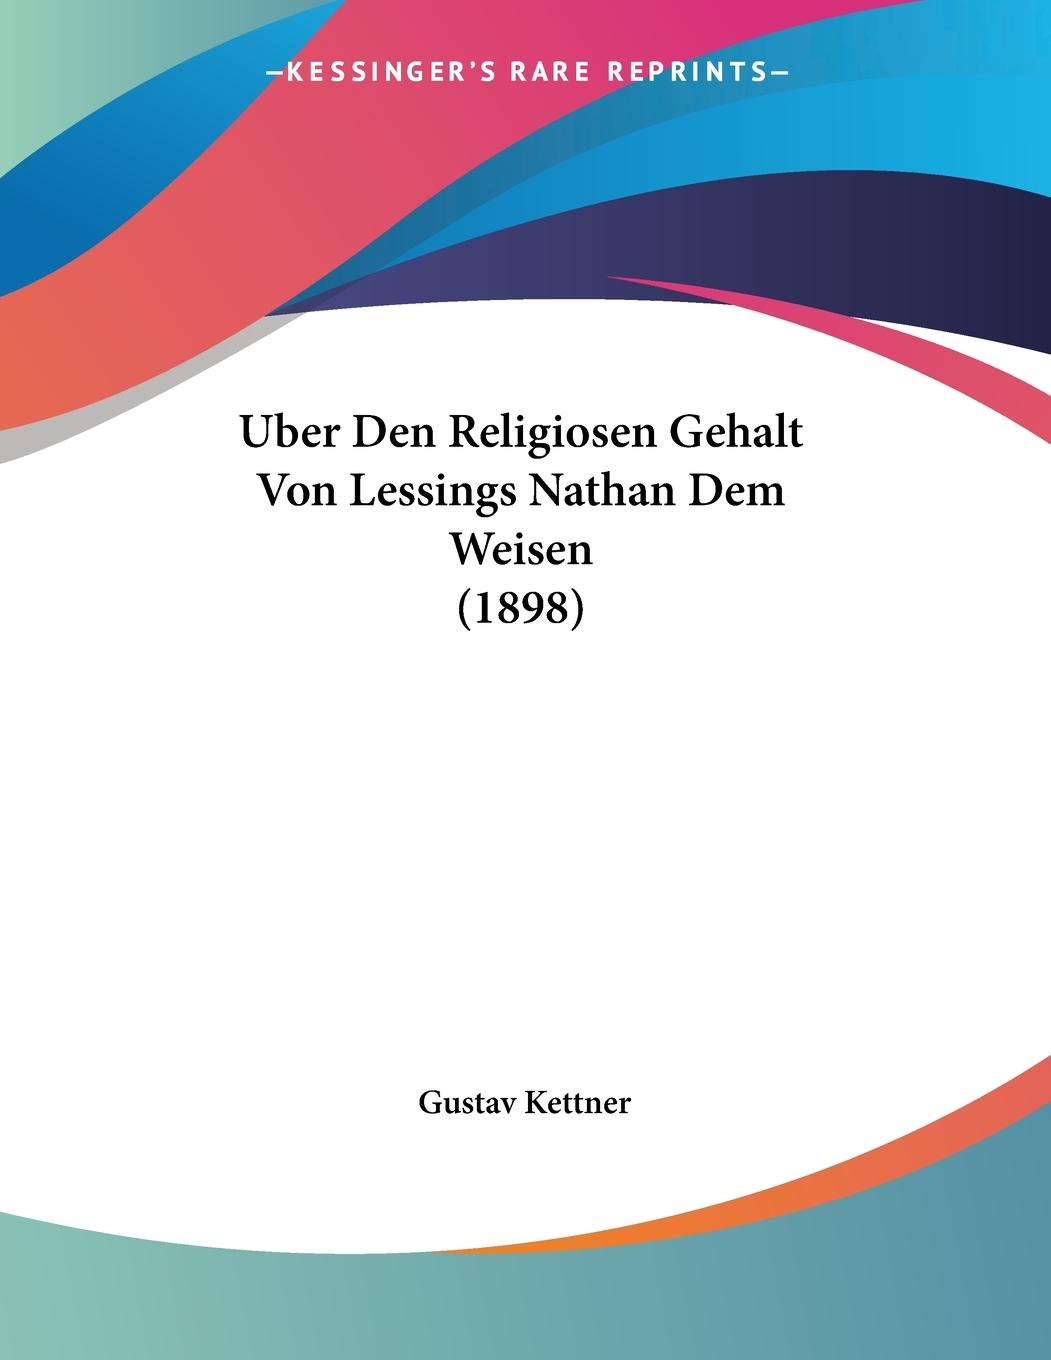 Uber Den Religiosen Gehalt Von Lessings Nathan Dem Weisen (1898) - Kettner, Gustav